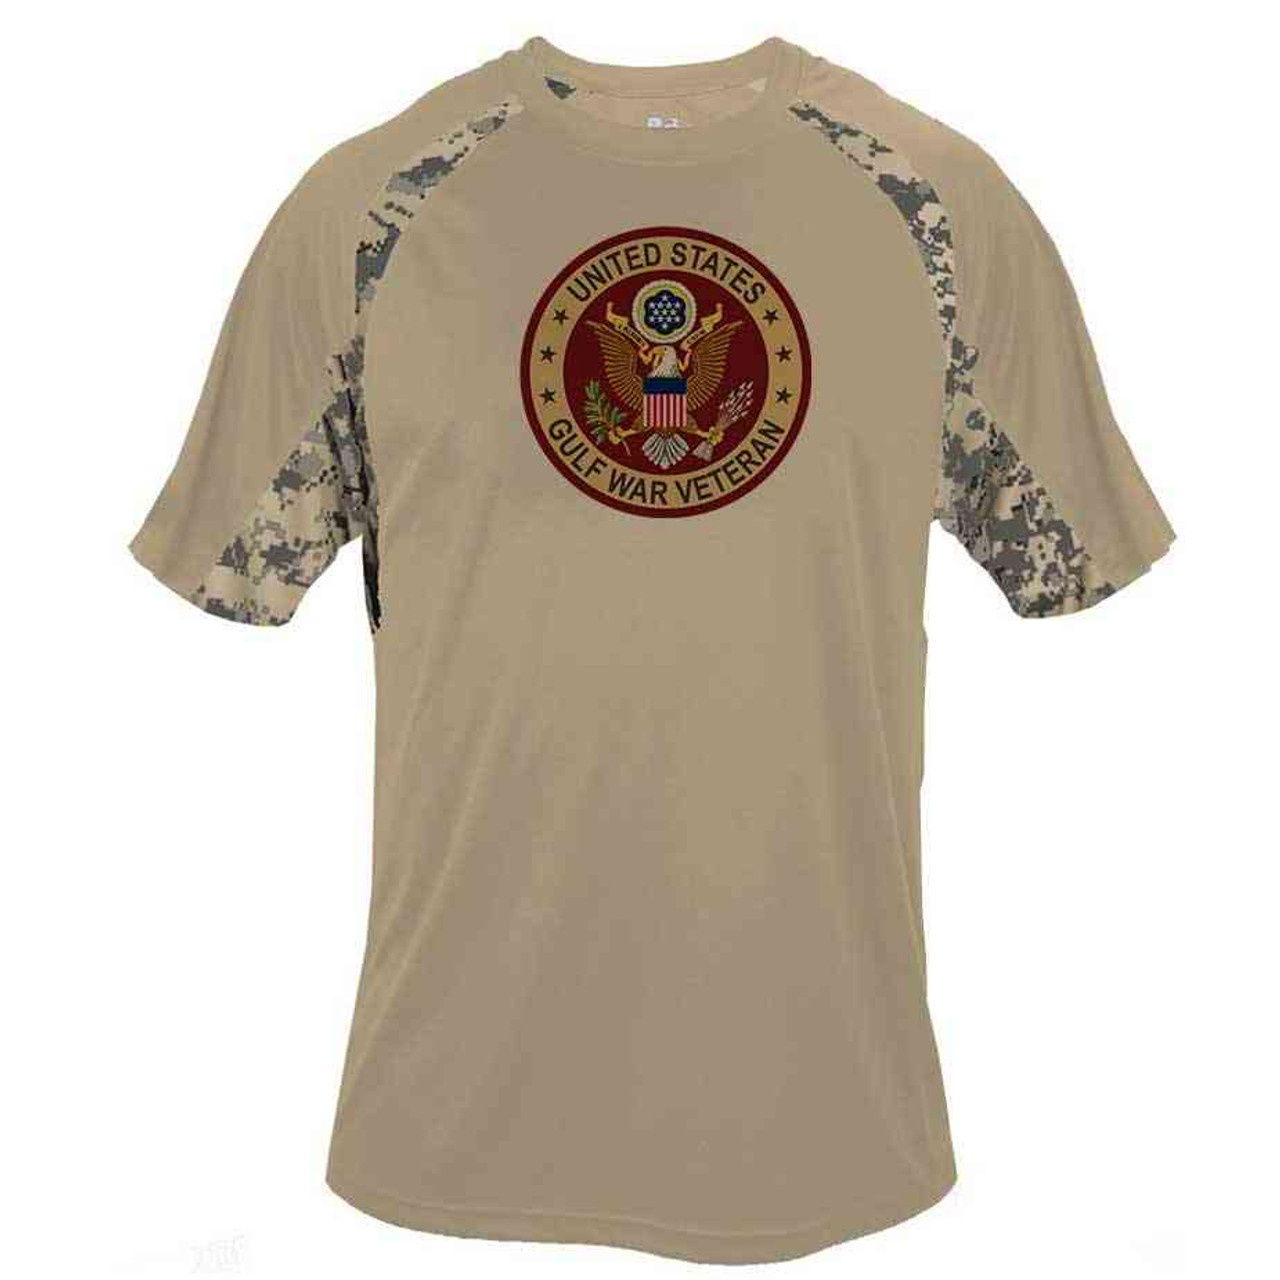 Gulf War Veteran Shirt with Eagle Emblem